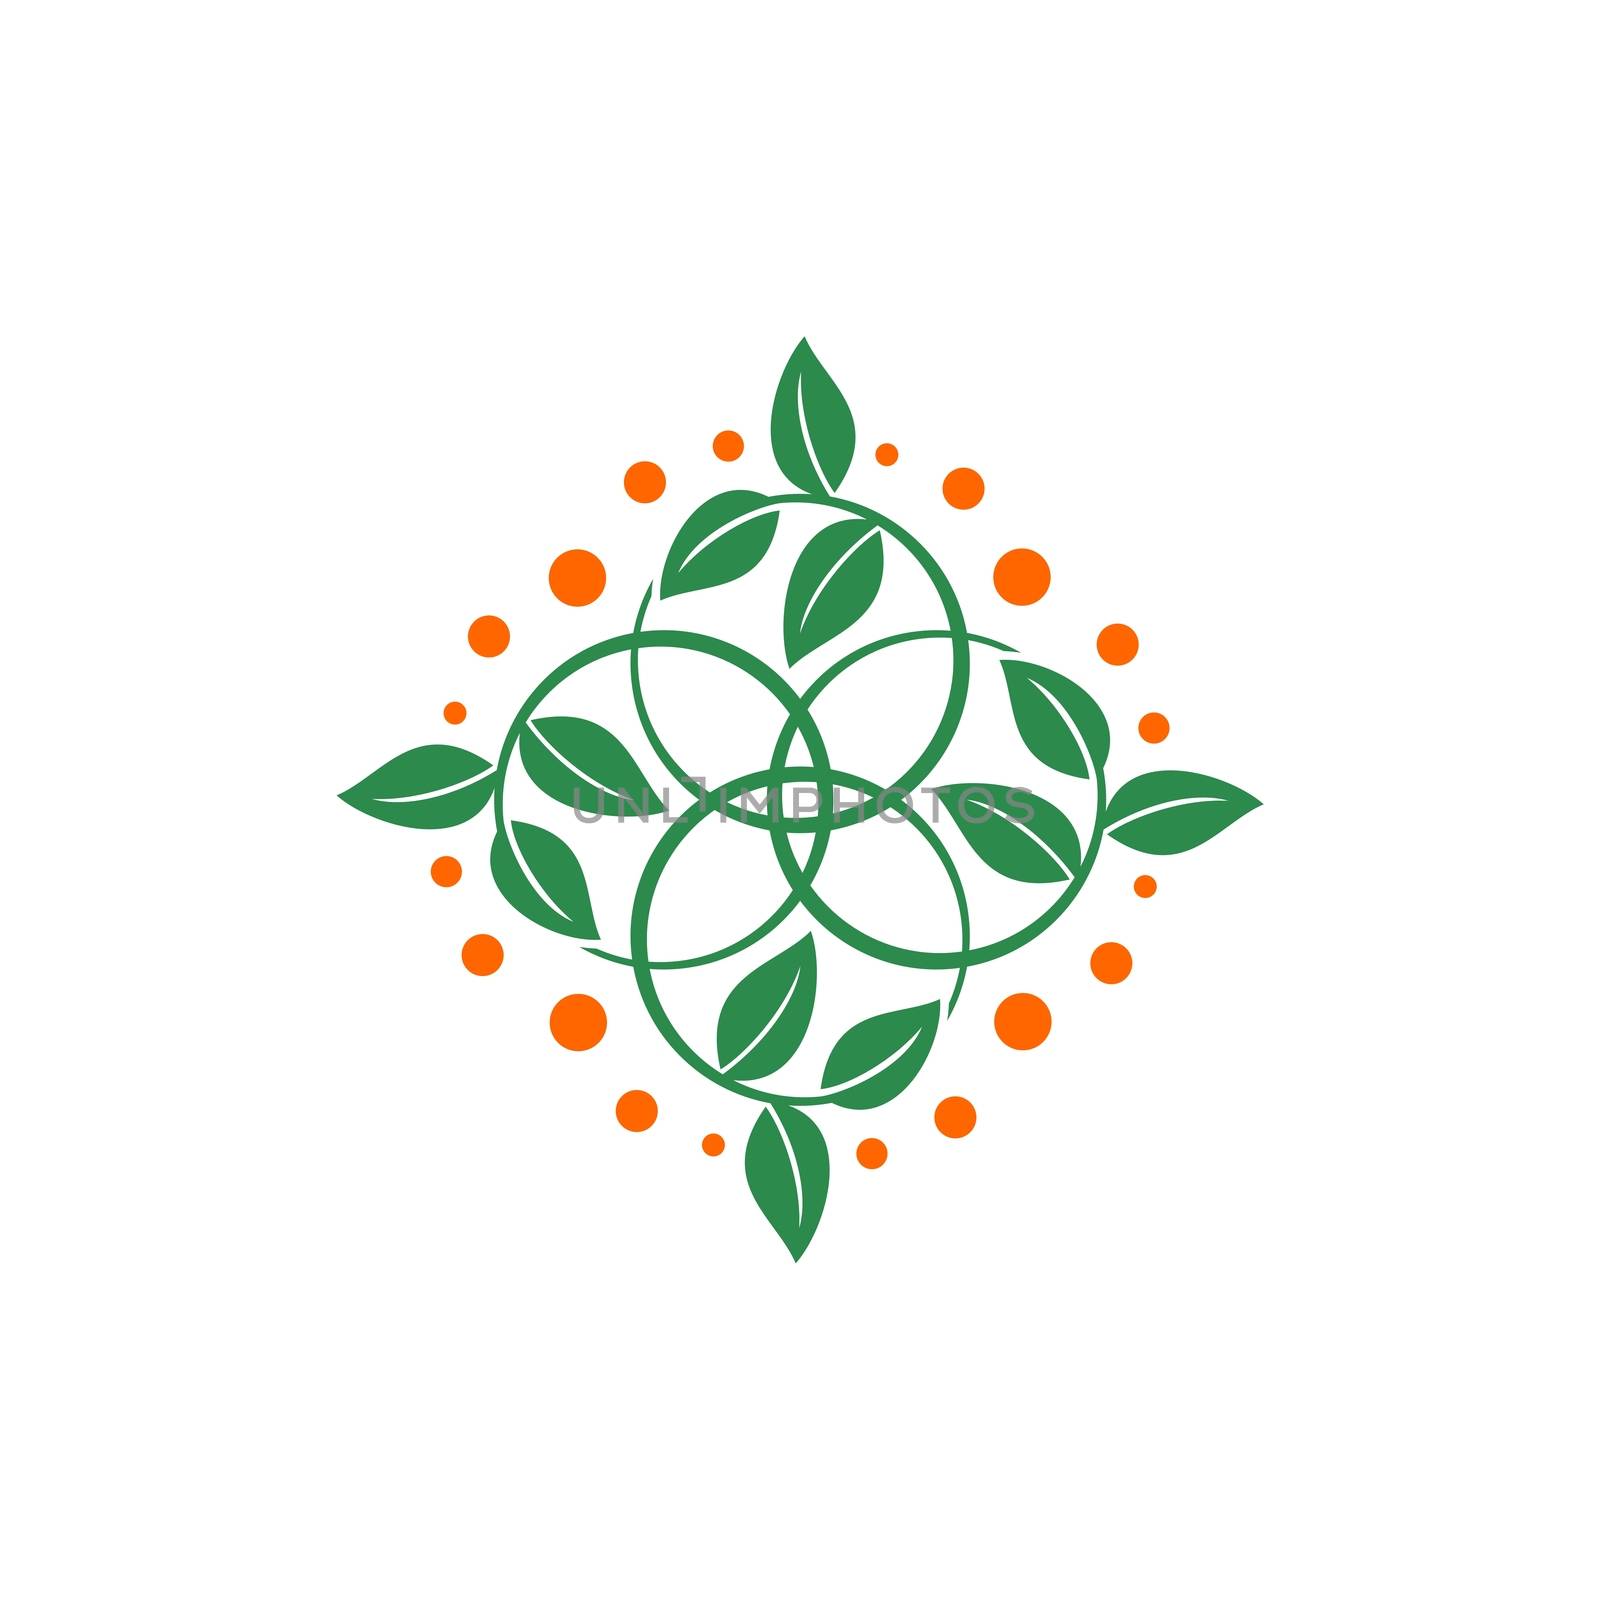 Ornamental Green Leaves Logo Template Illustration Design. Vector EPS 10.